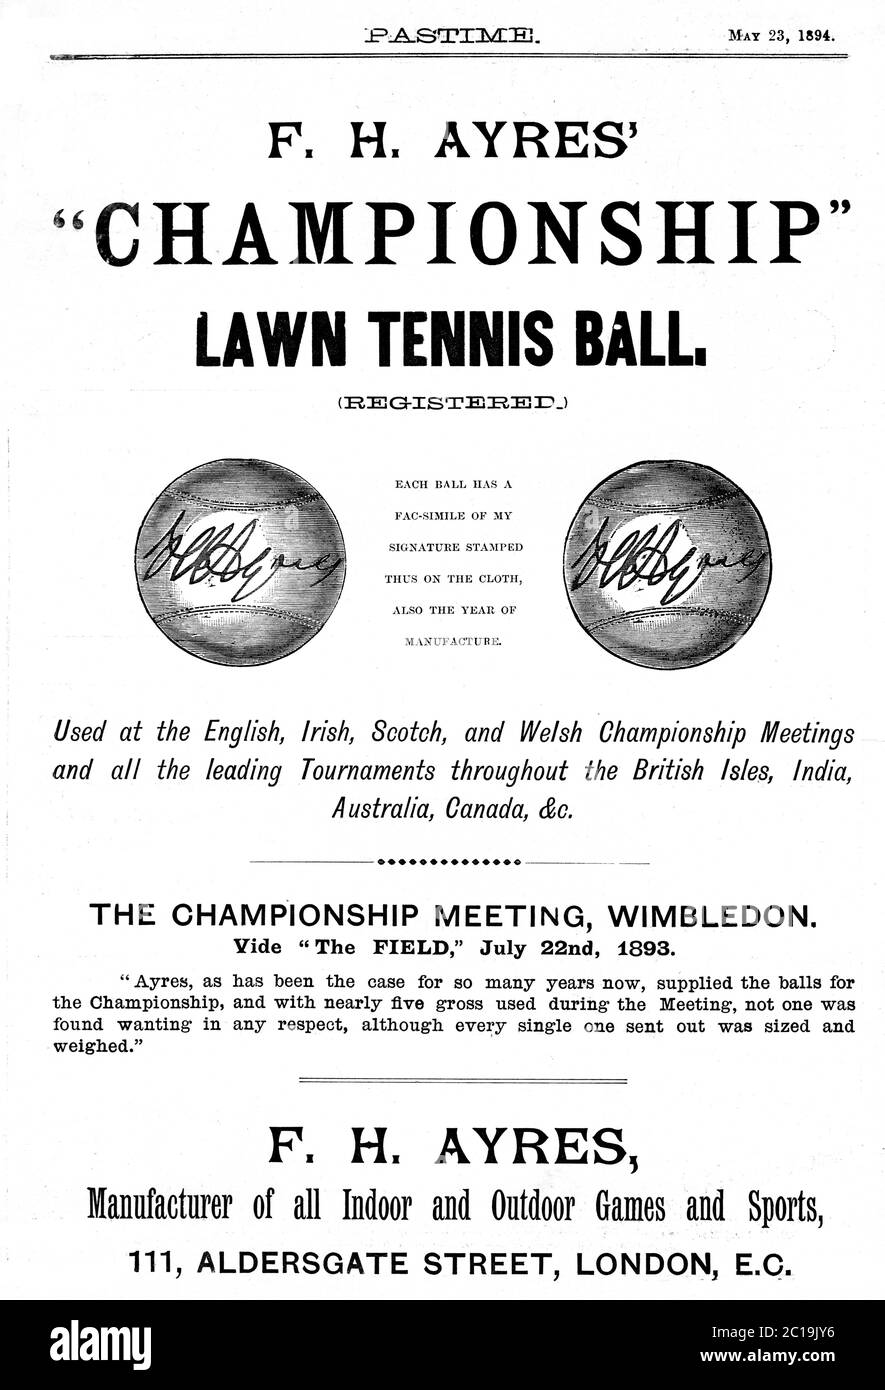 FH Ayres Championship Tennis Ball, anuncio de la revista 1894 para las bolas hechas en Inglaterra y utilizadas en el Campeonato de Wimbledon y en todo el mundo Foto de stock